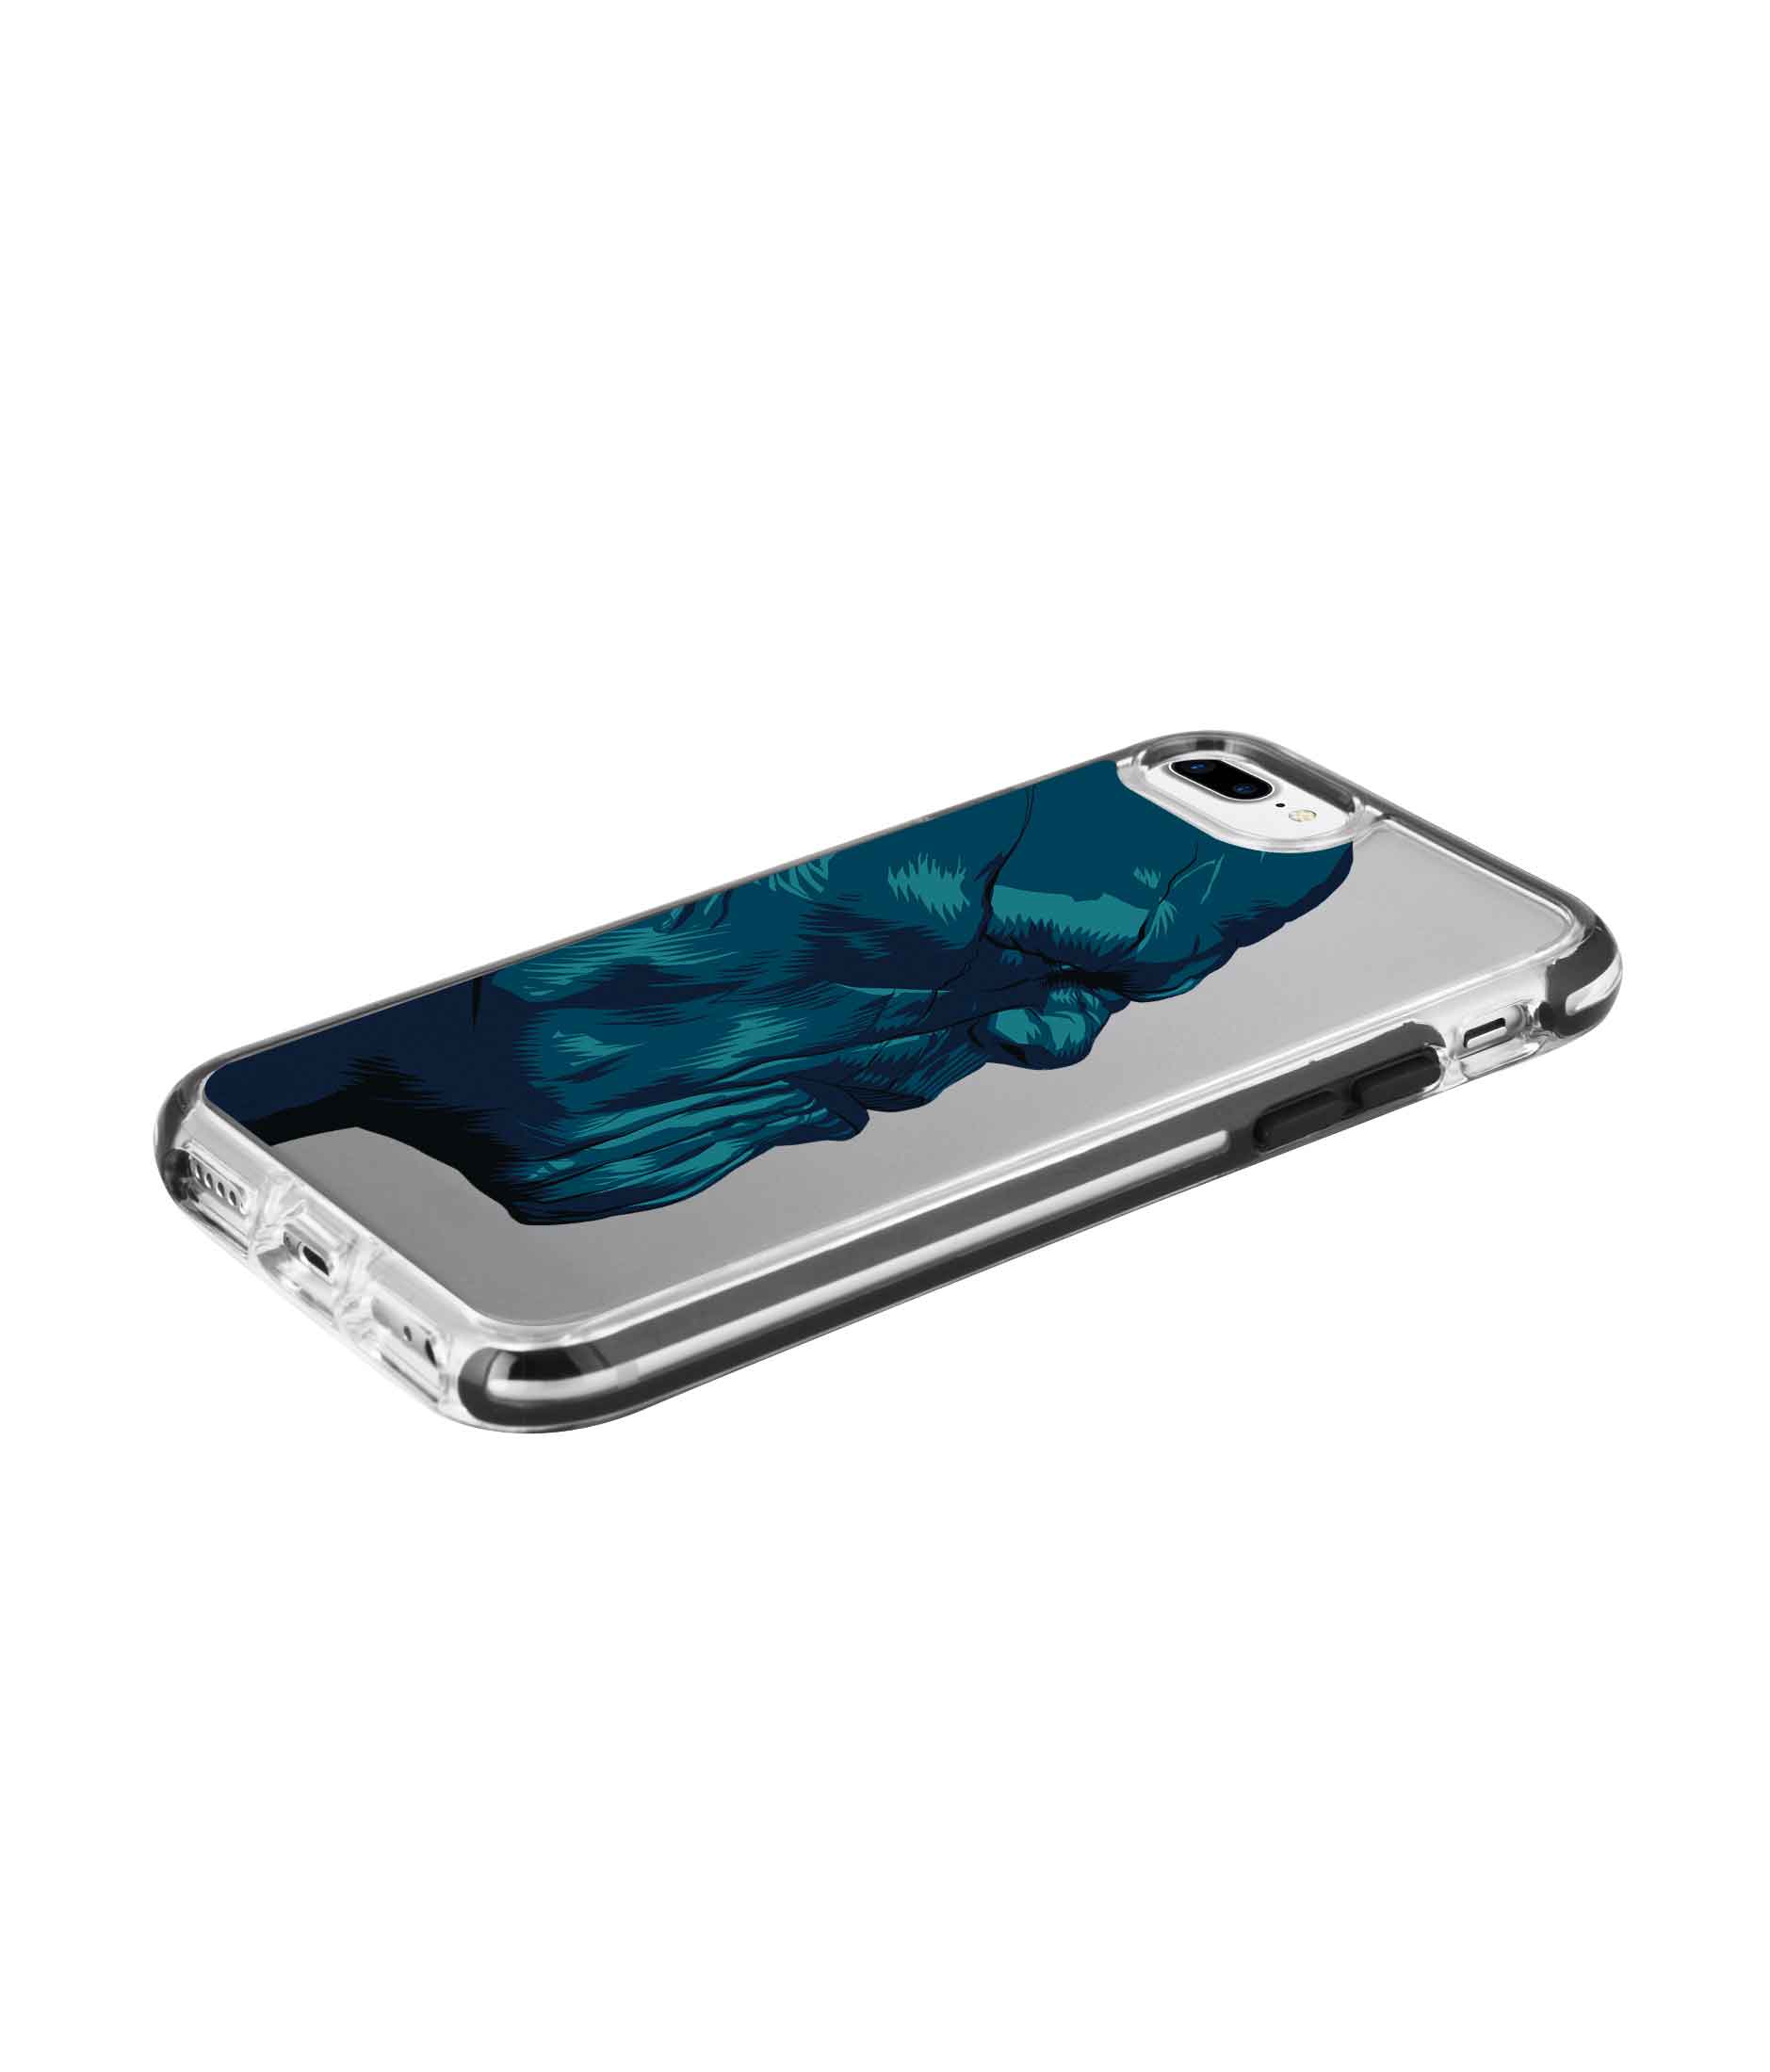 Illuminated Thanos - Extreme Phone Case for iPhone 7 Plus